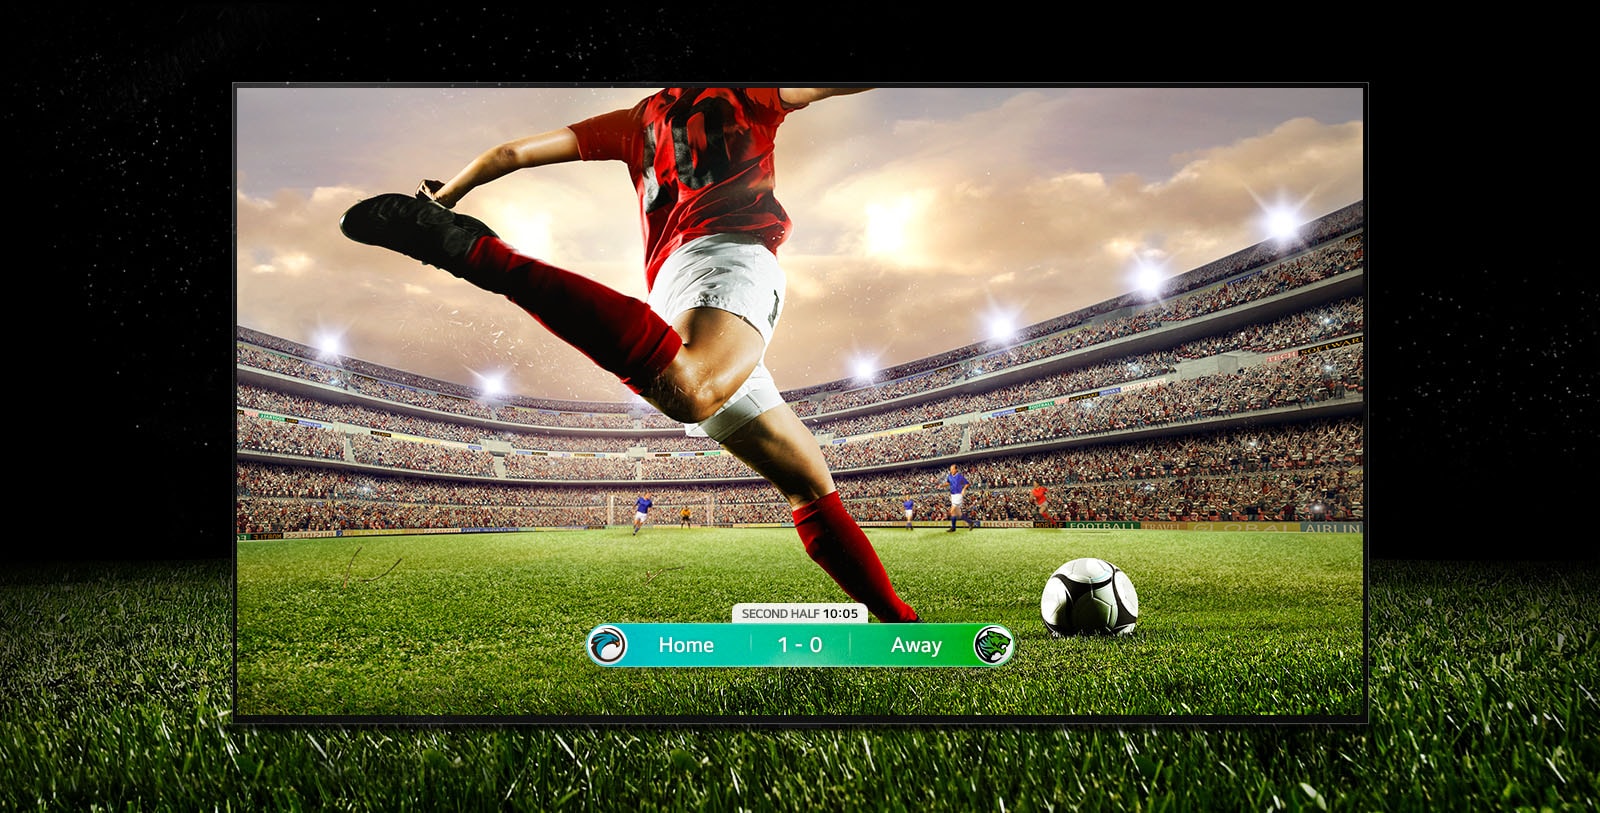 Slika nogometne tekme na zaslonu, kjer se igralec v rdeči črtasti obleki pripravlja na brcanje žoge po stadionu.  Na dnu zaslona je prikazan rezultat tekme.  Zelena trava na igrišču sega čez zaslon do črnega ozadja.